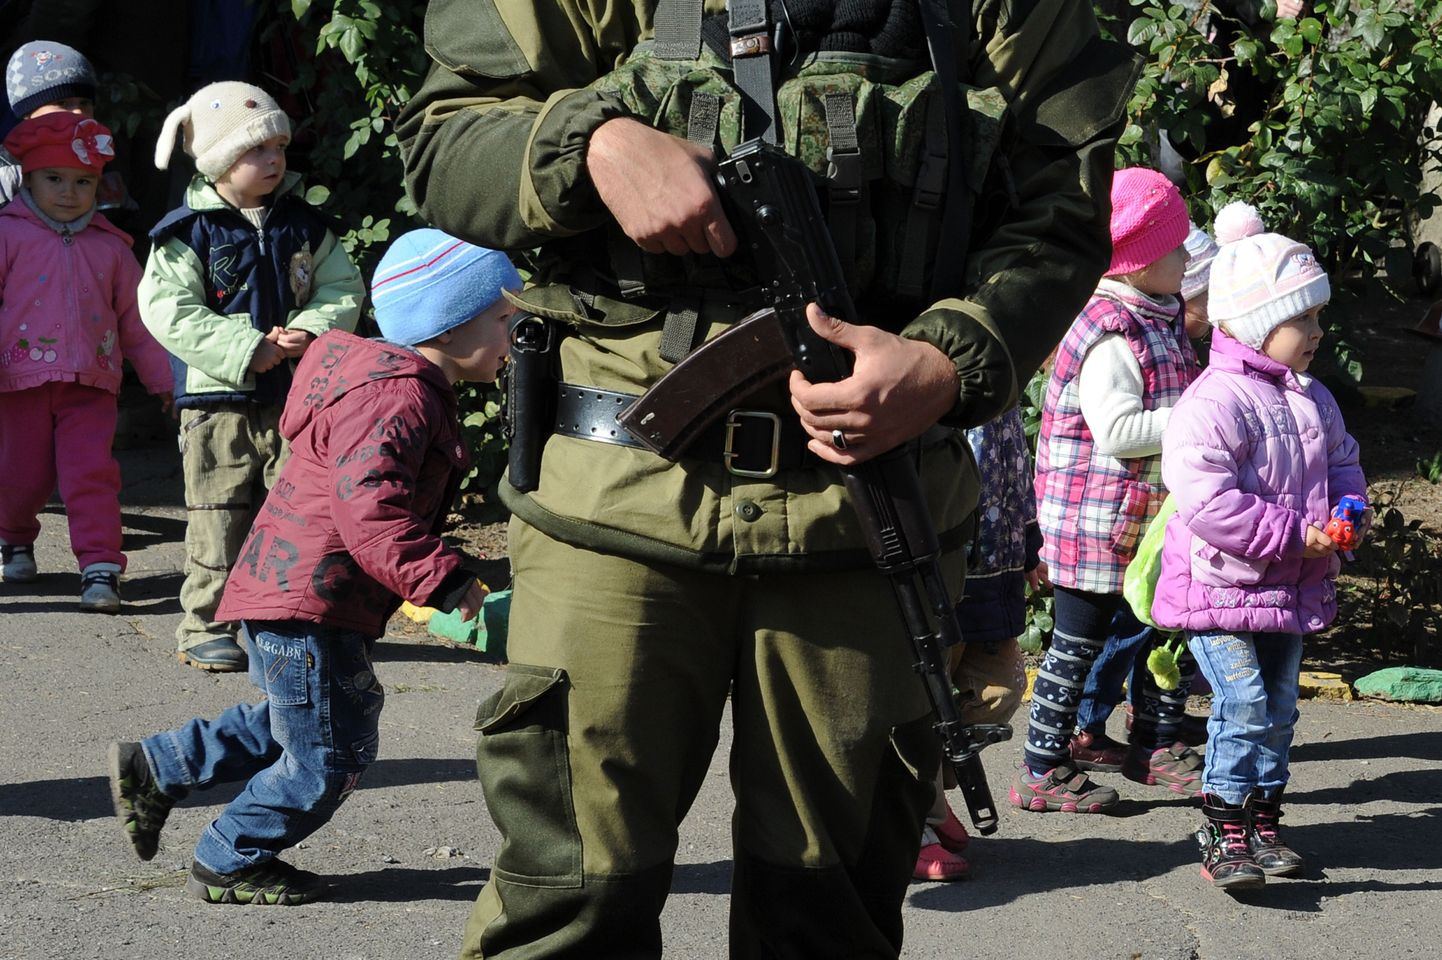 Venemaa huve esindava nn Donetski rahvavabariigi võitleja Ilovaiski laste taustal.